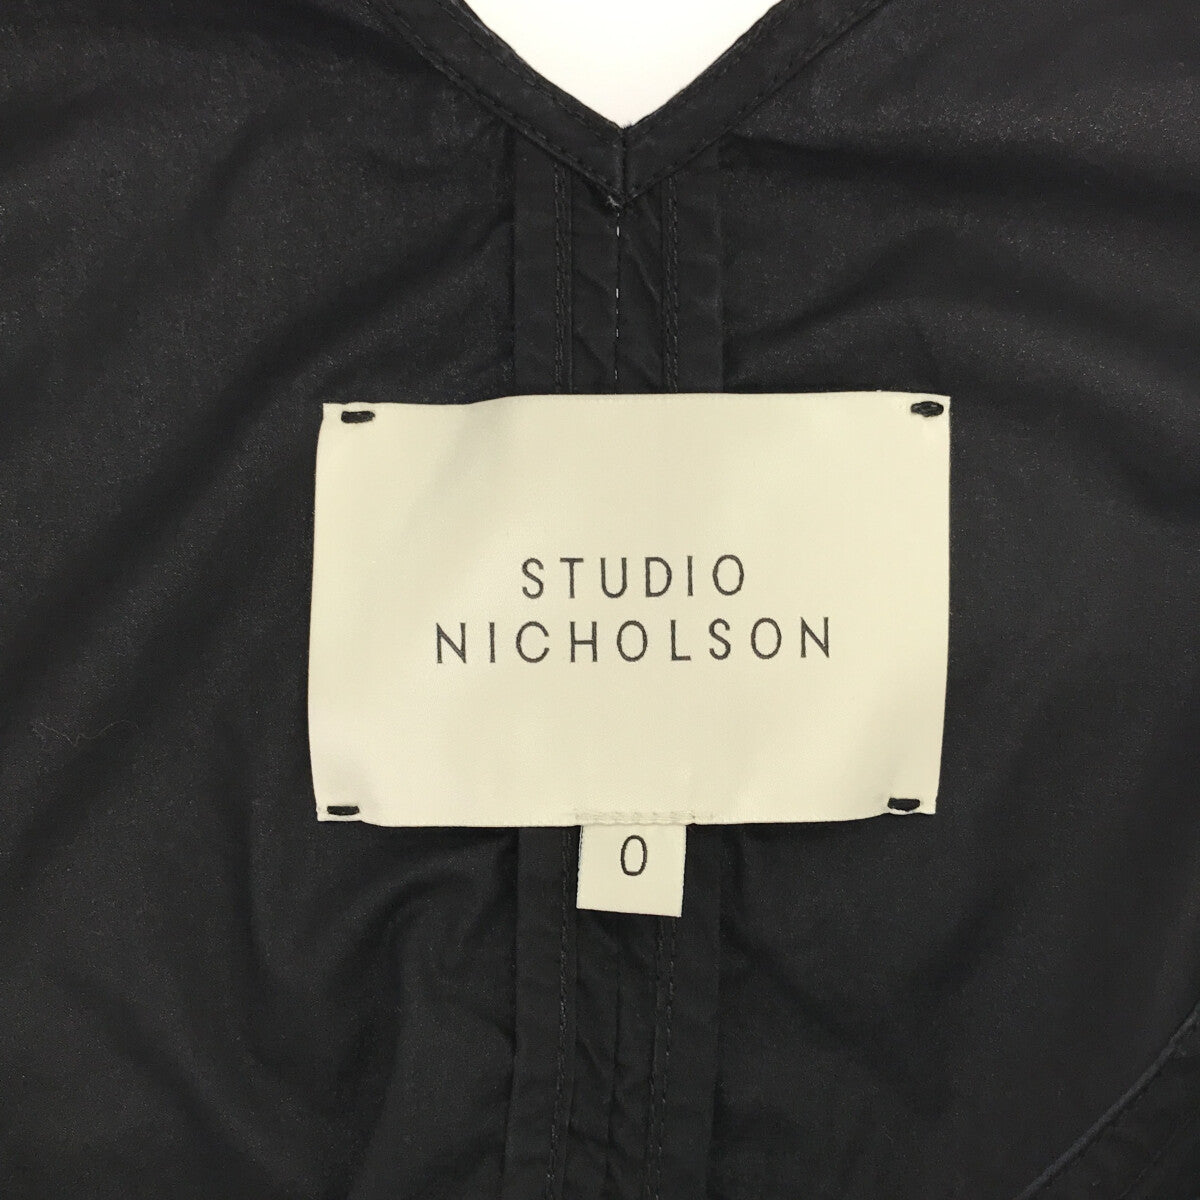 Studio Nicholson / スタジオニコルソン | コットン ティアード キャミソール ワンピース | 0 | レディース